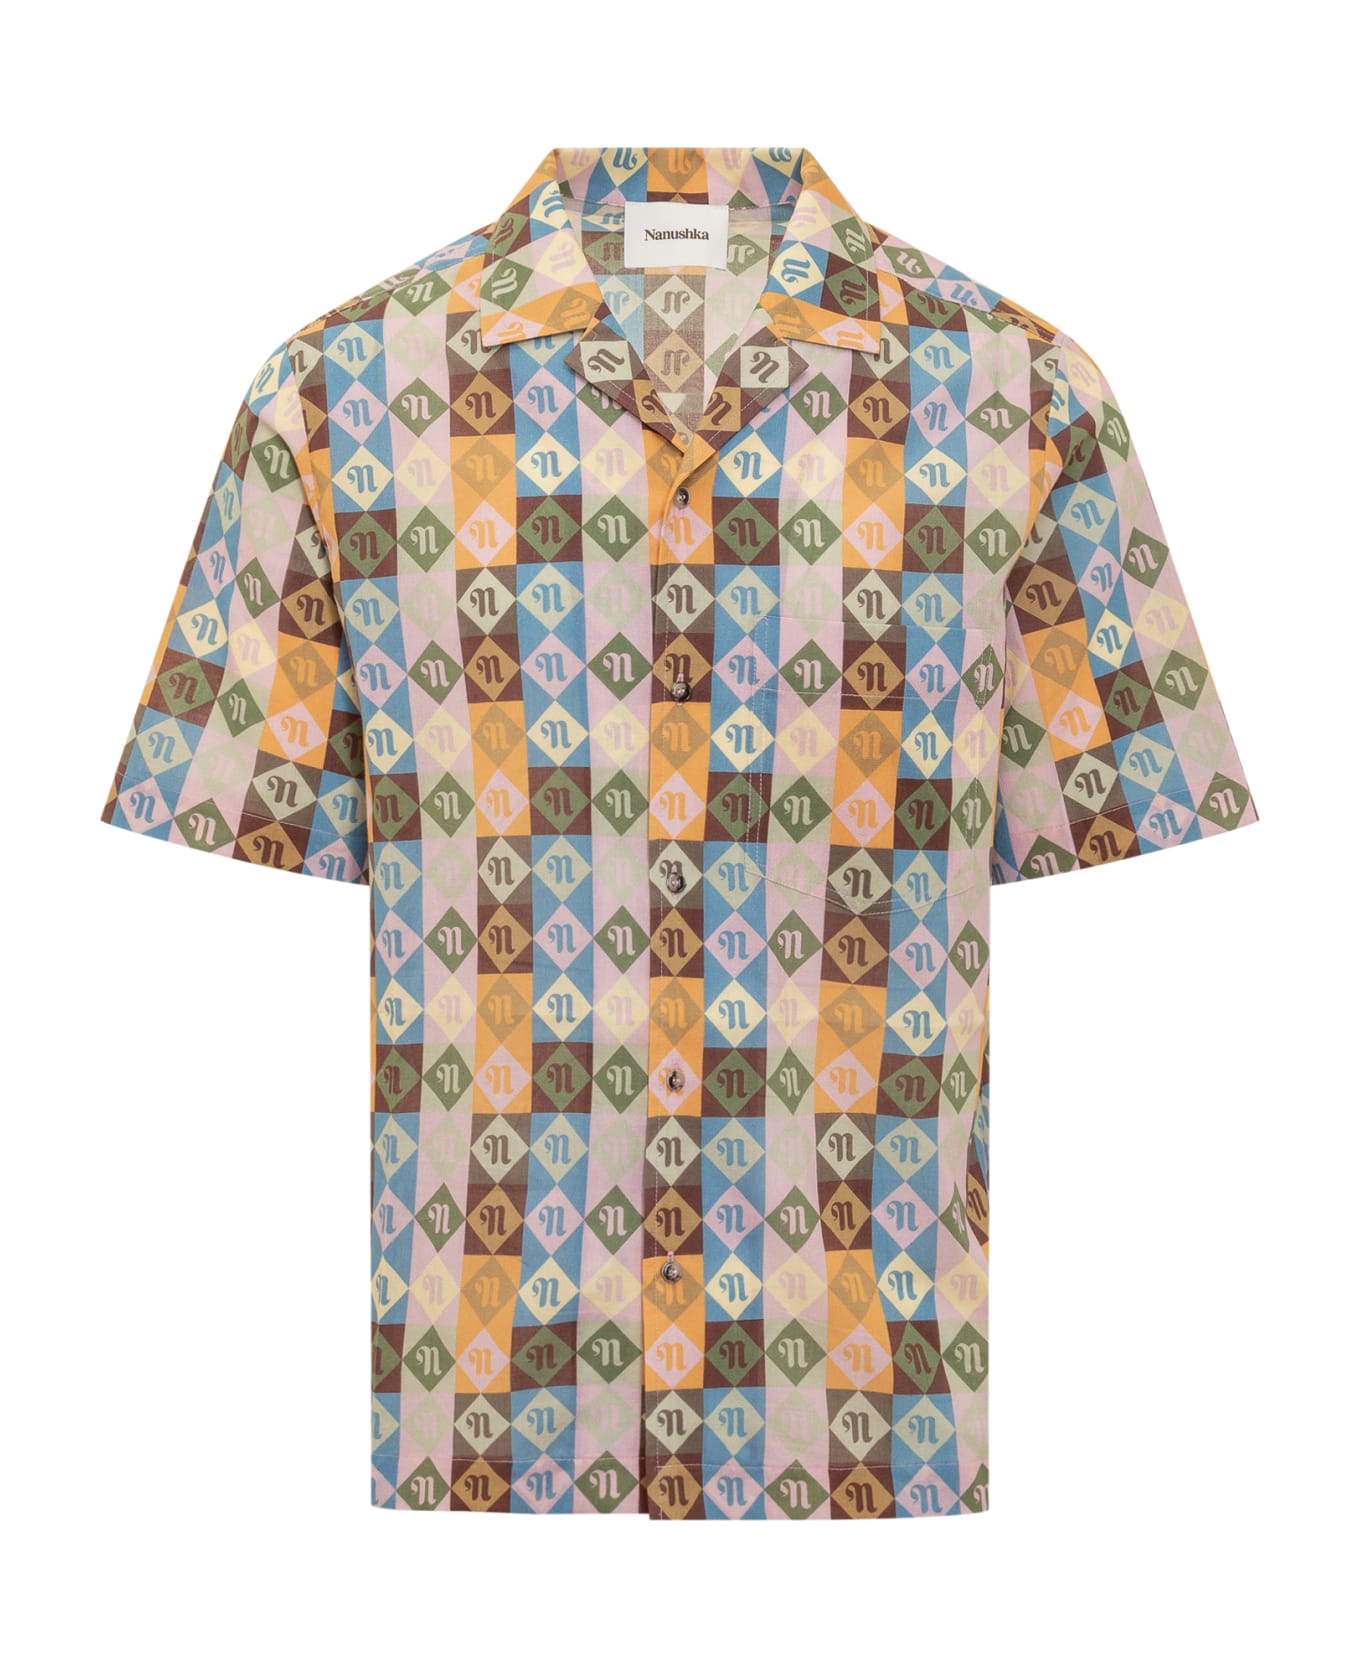 Nanushka Bodil Camp Shirt - DIAMOND CHECK シャツ